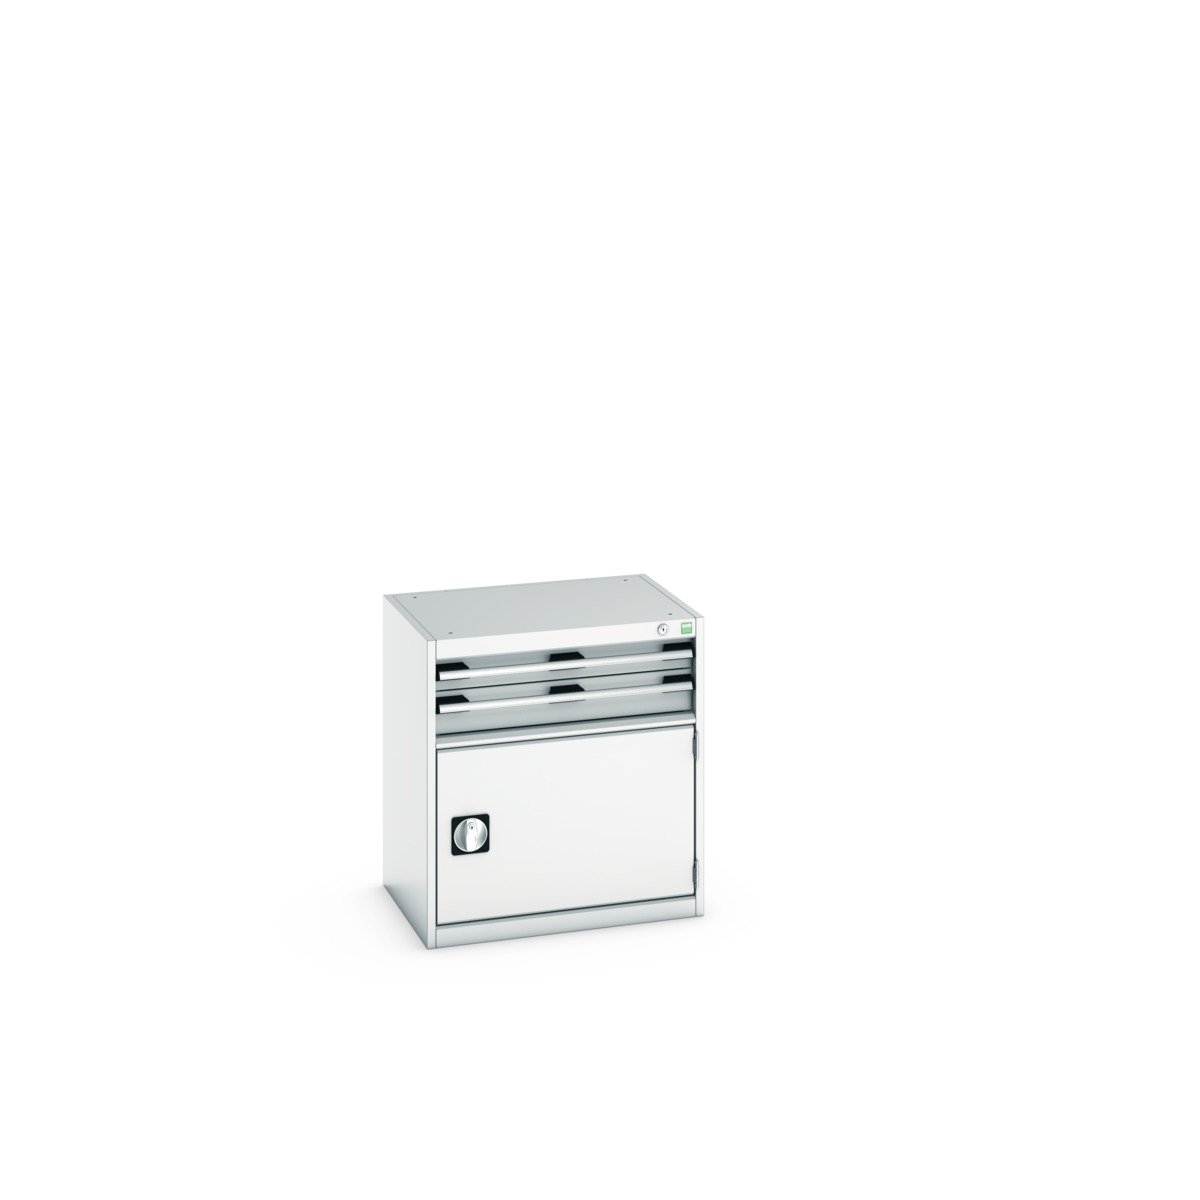 40011041.16V - cubio drawer-door cabinet